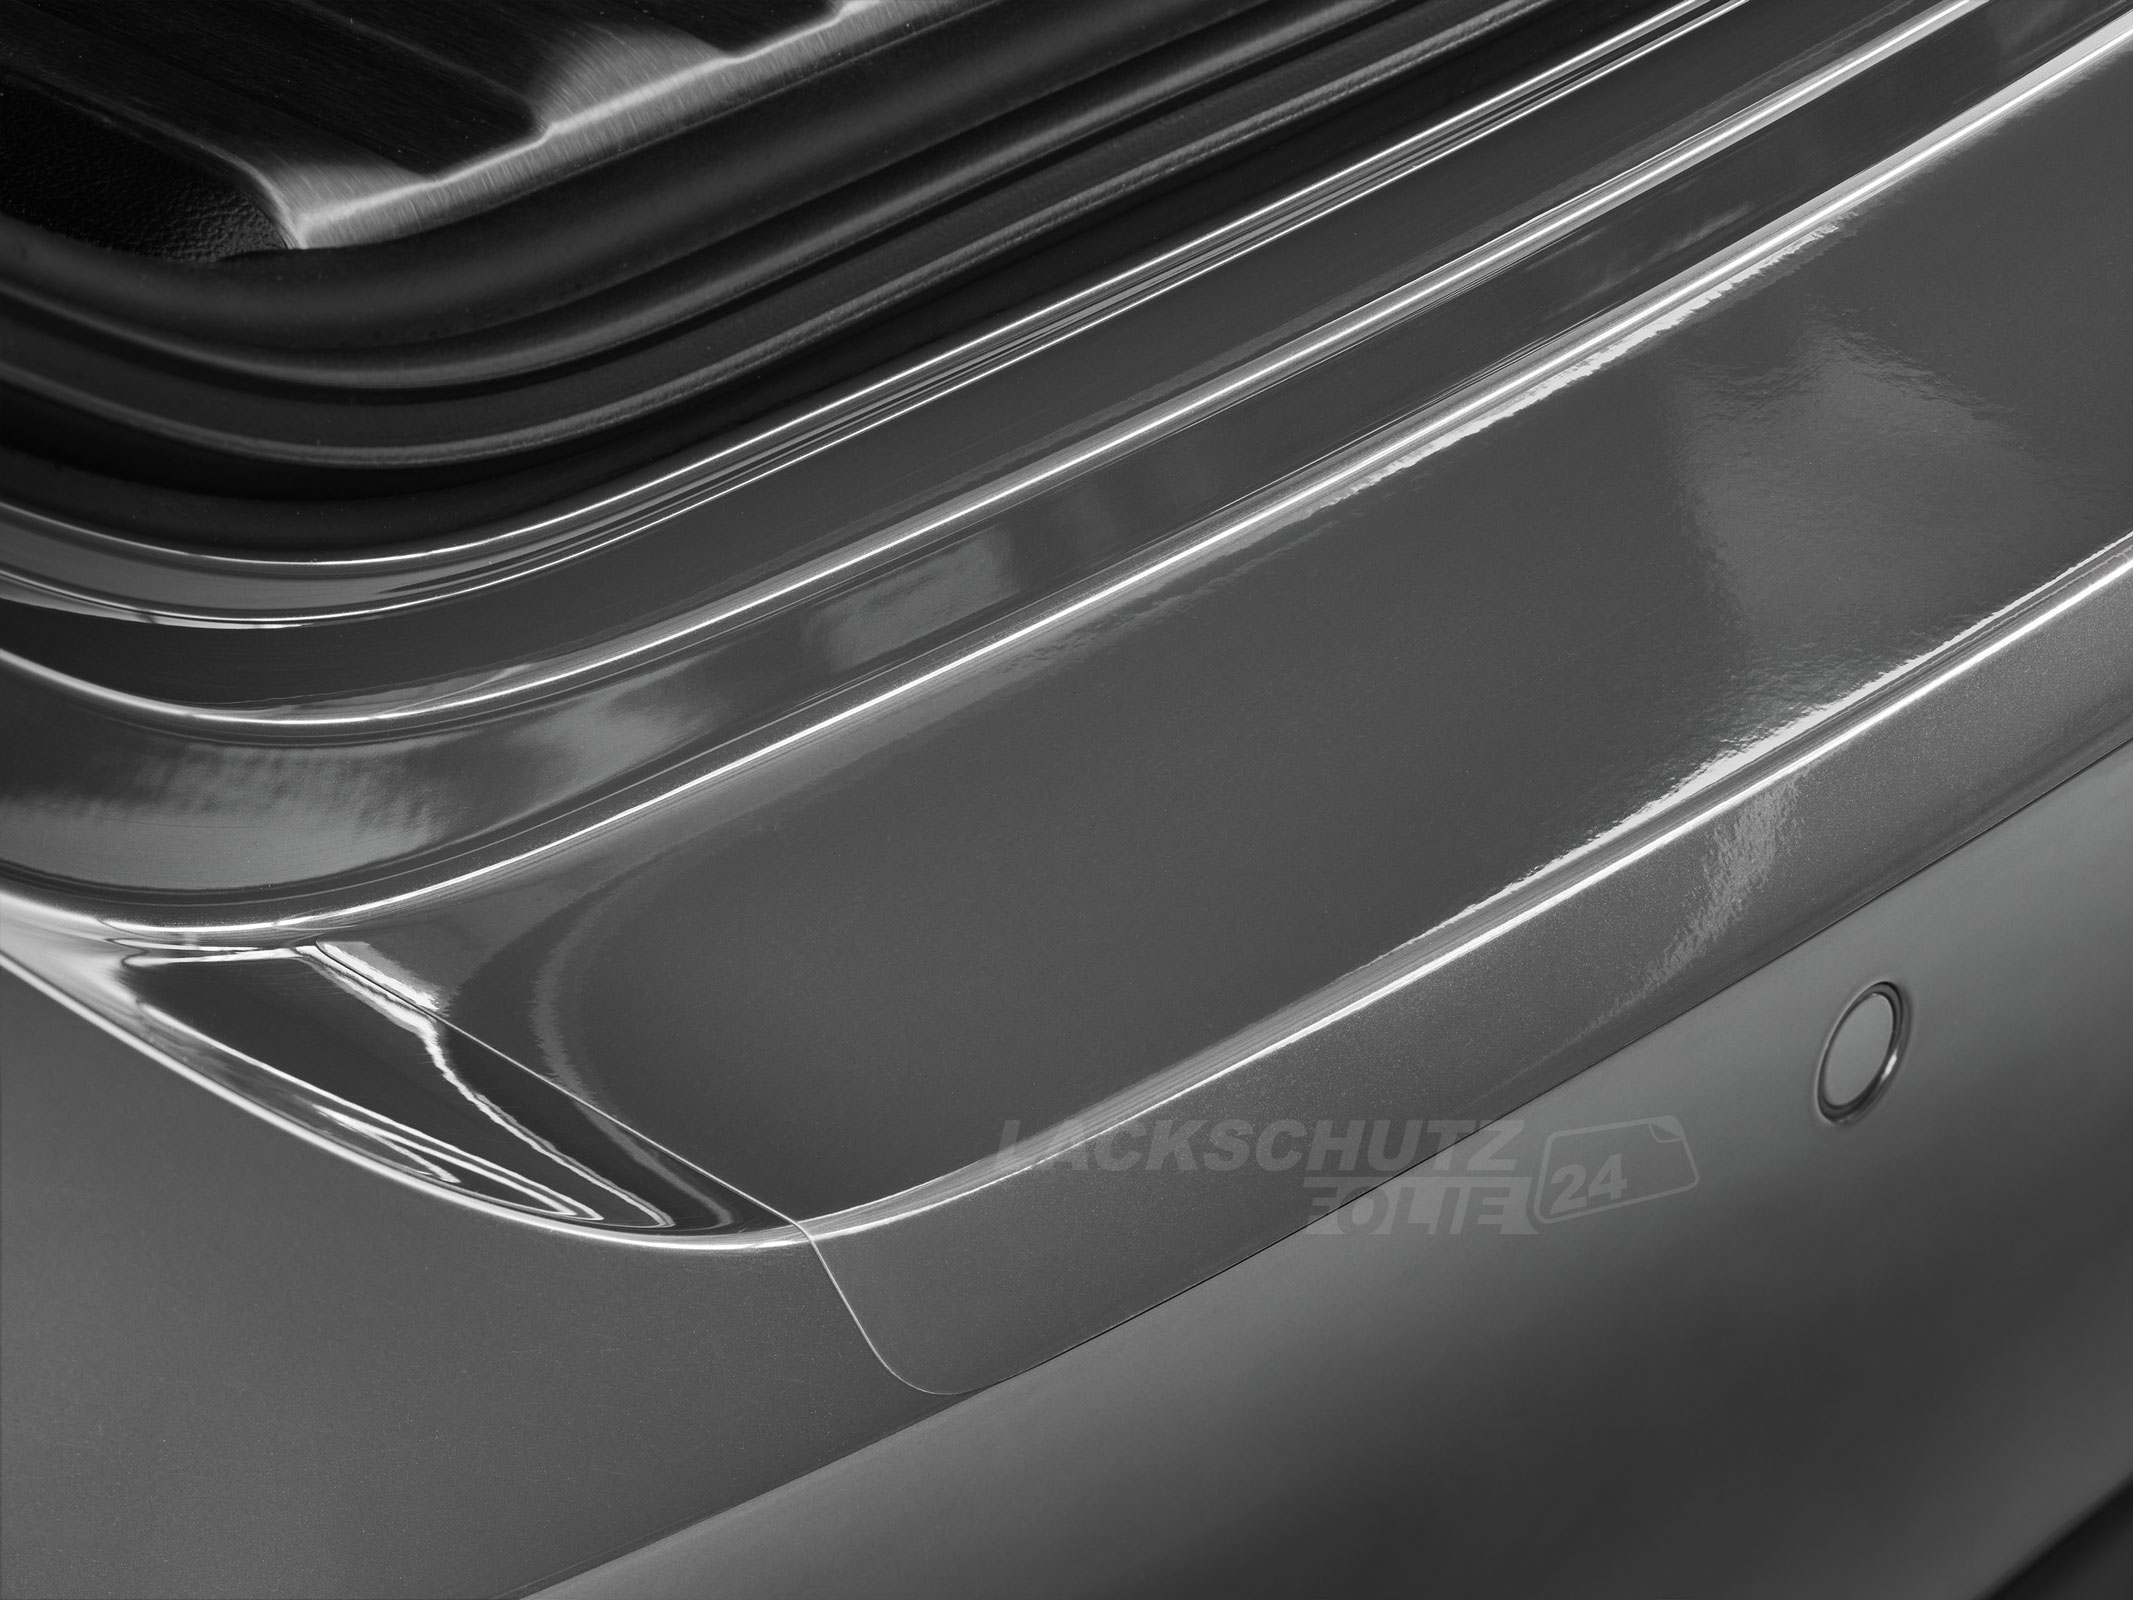 Ladekantenschutzfolie - Transparent Glatt Hochglänzend für Mercedes-Benz M-Klasse Typ W164, BJ 2005-2011